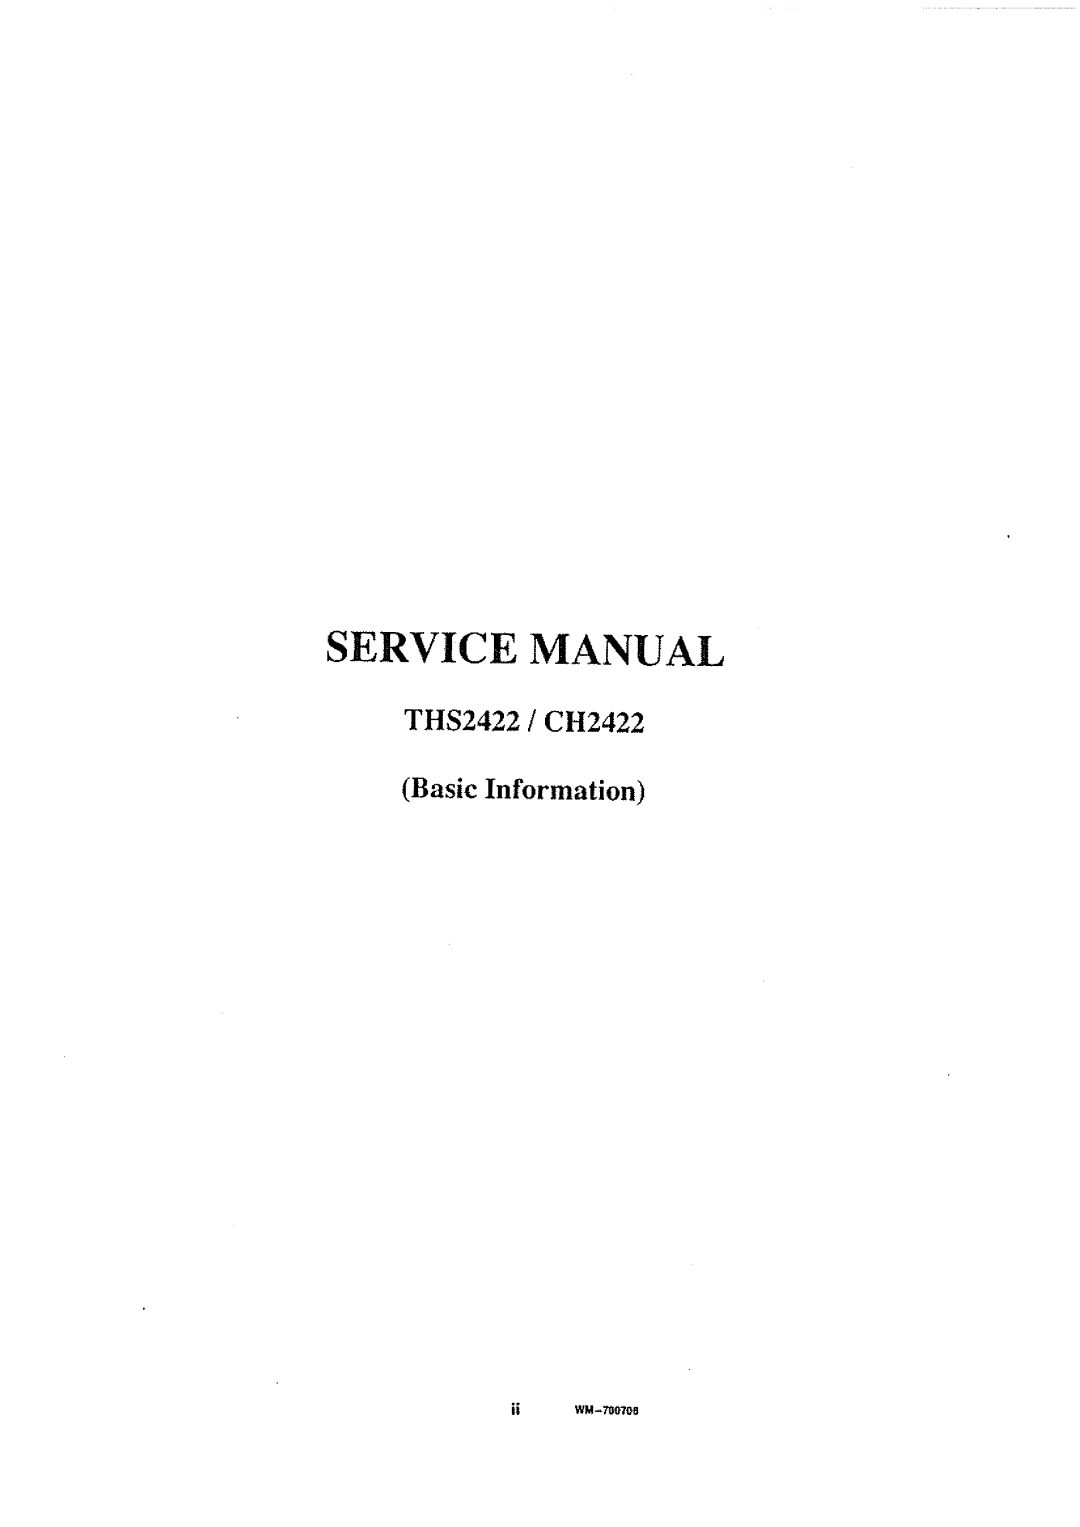 Sanyo THS2422, CH2422 manual 